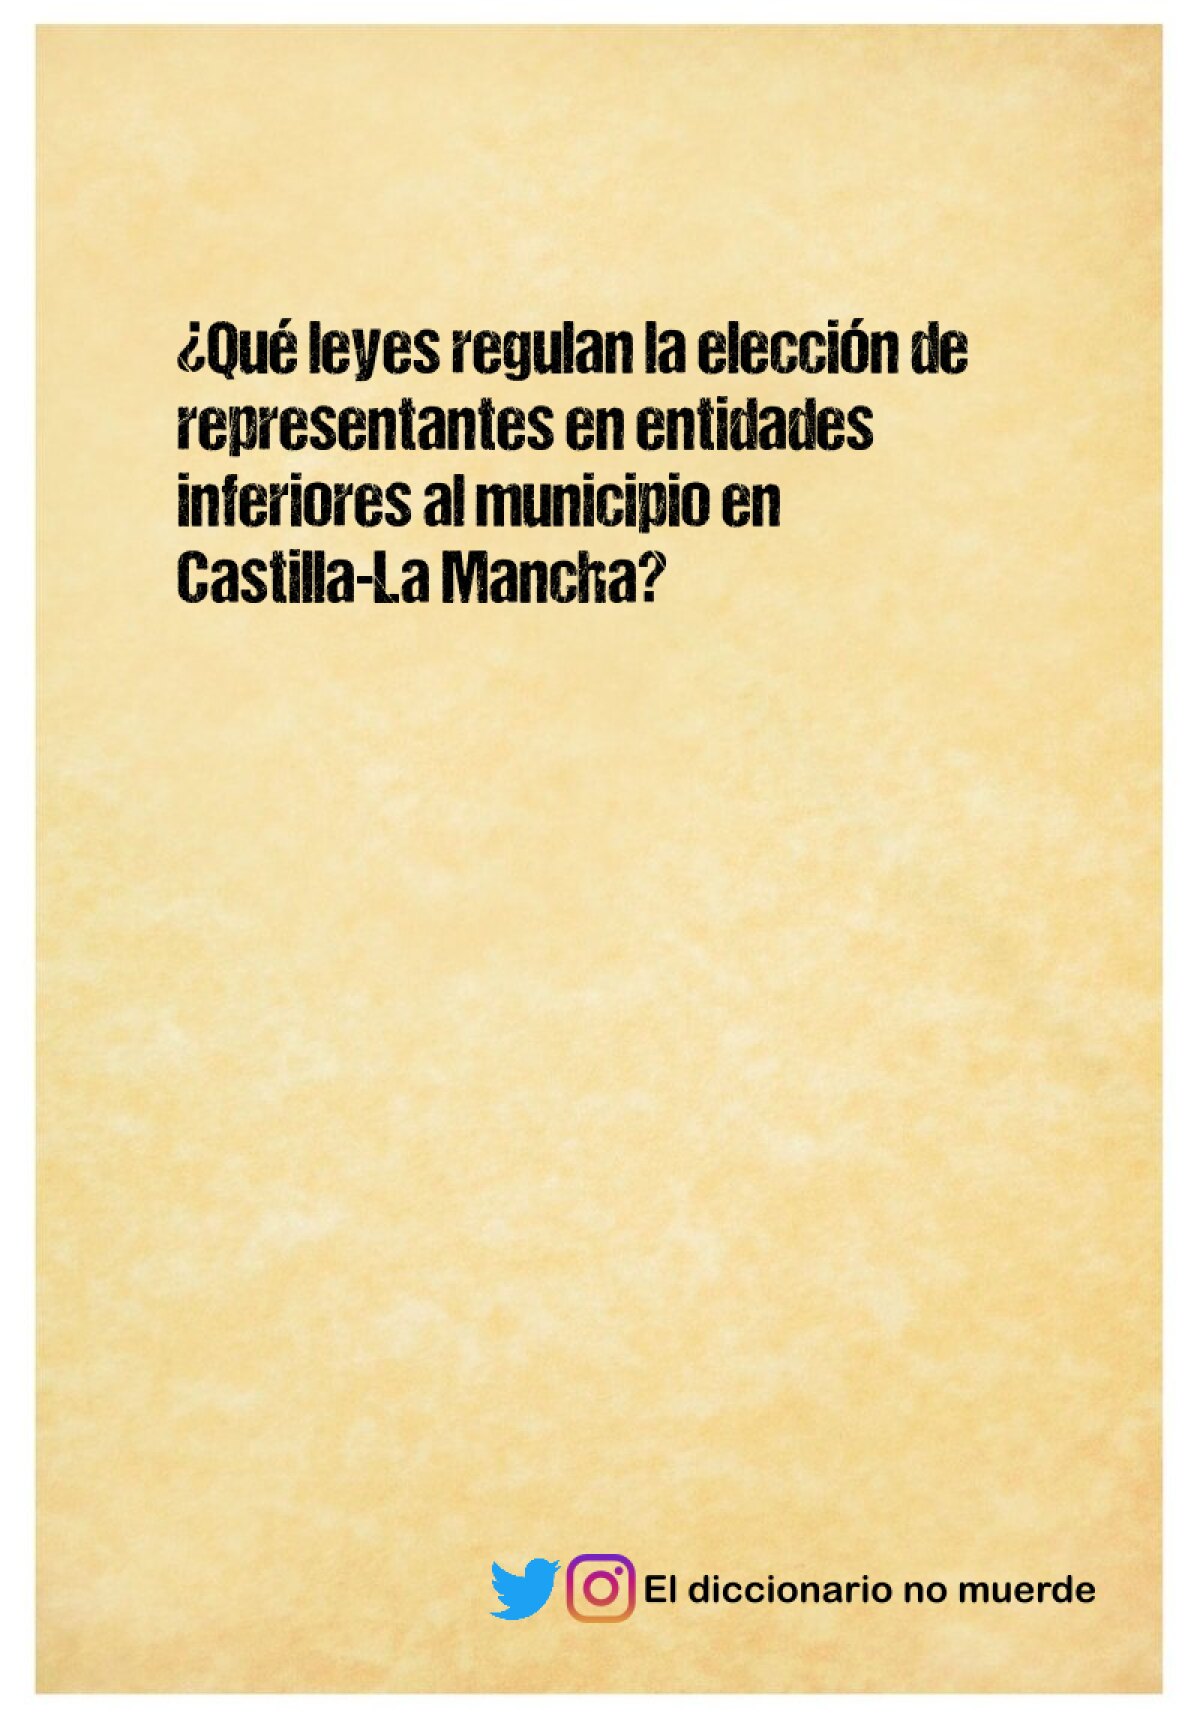 ¿Qué leyes regulan la elección de representantes en entidades inferiores al municipio en Castilla-La Mancha?